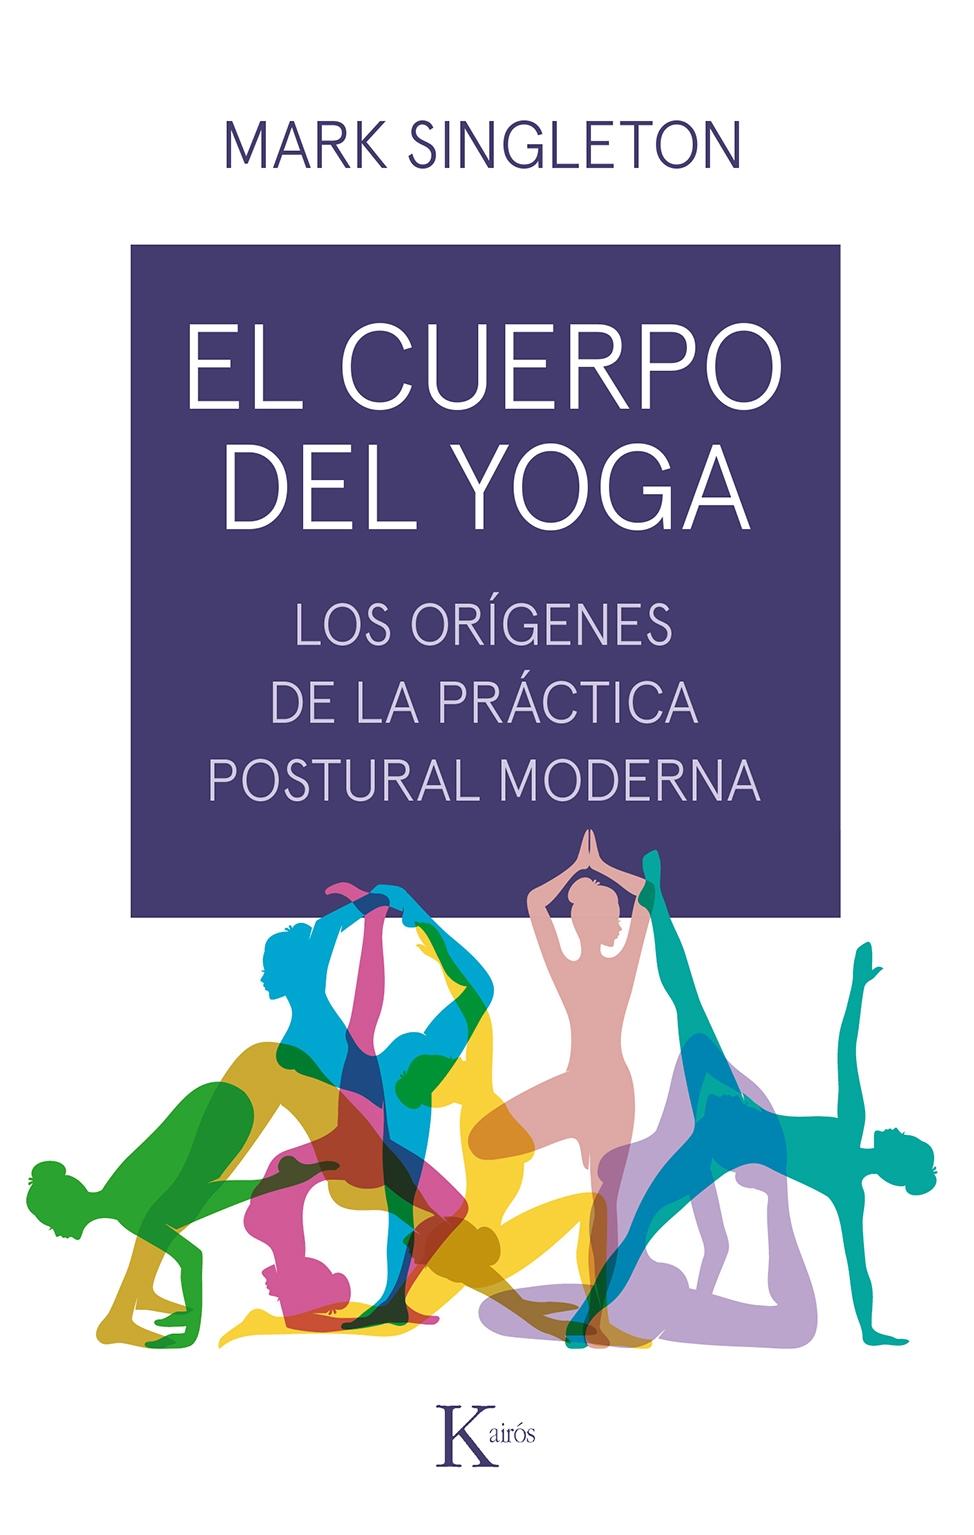 El cuerpo del yoga "Los orígenes de la práctica postural moderna". 